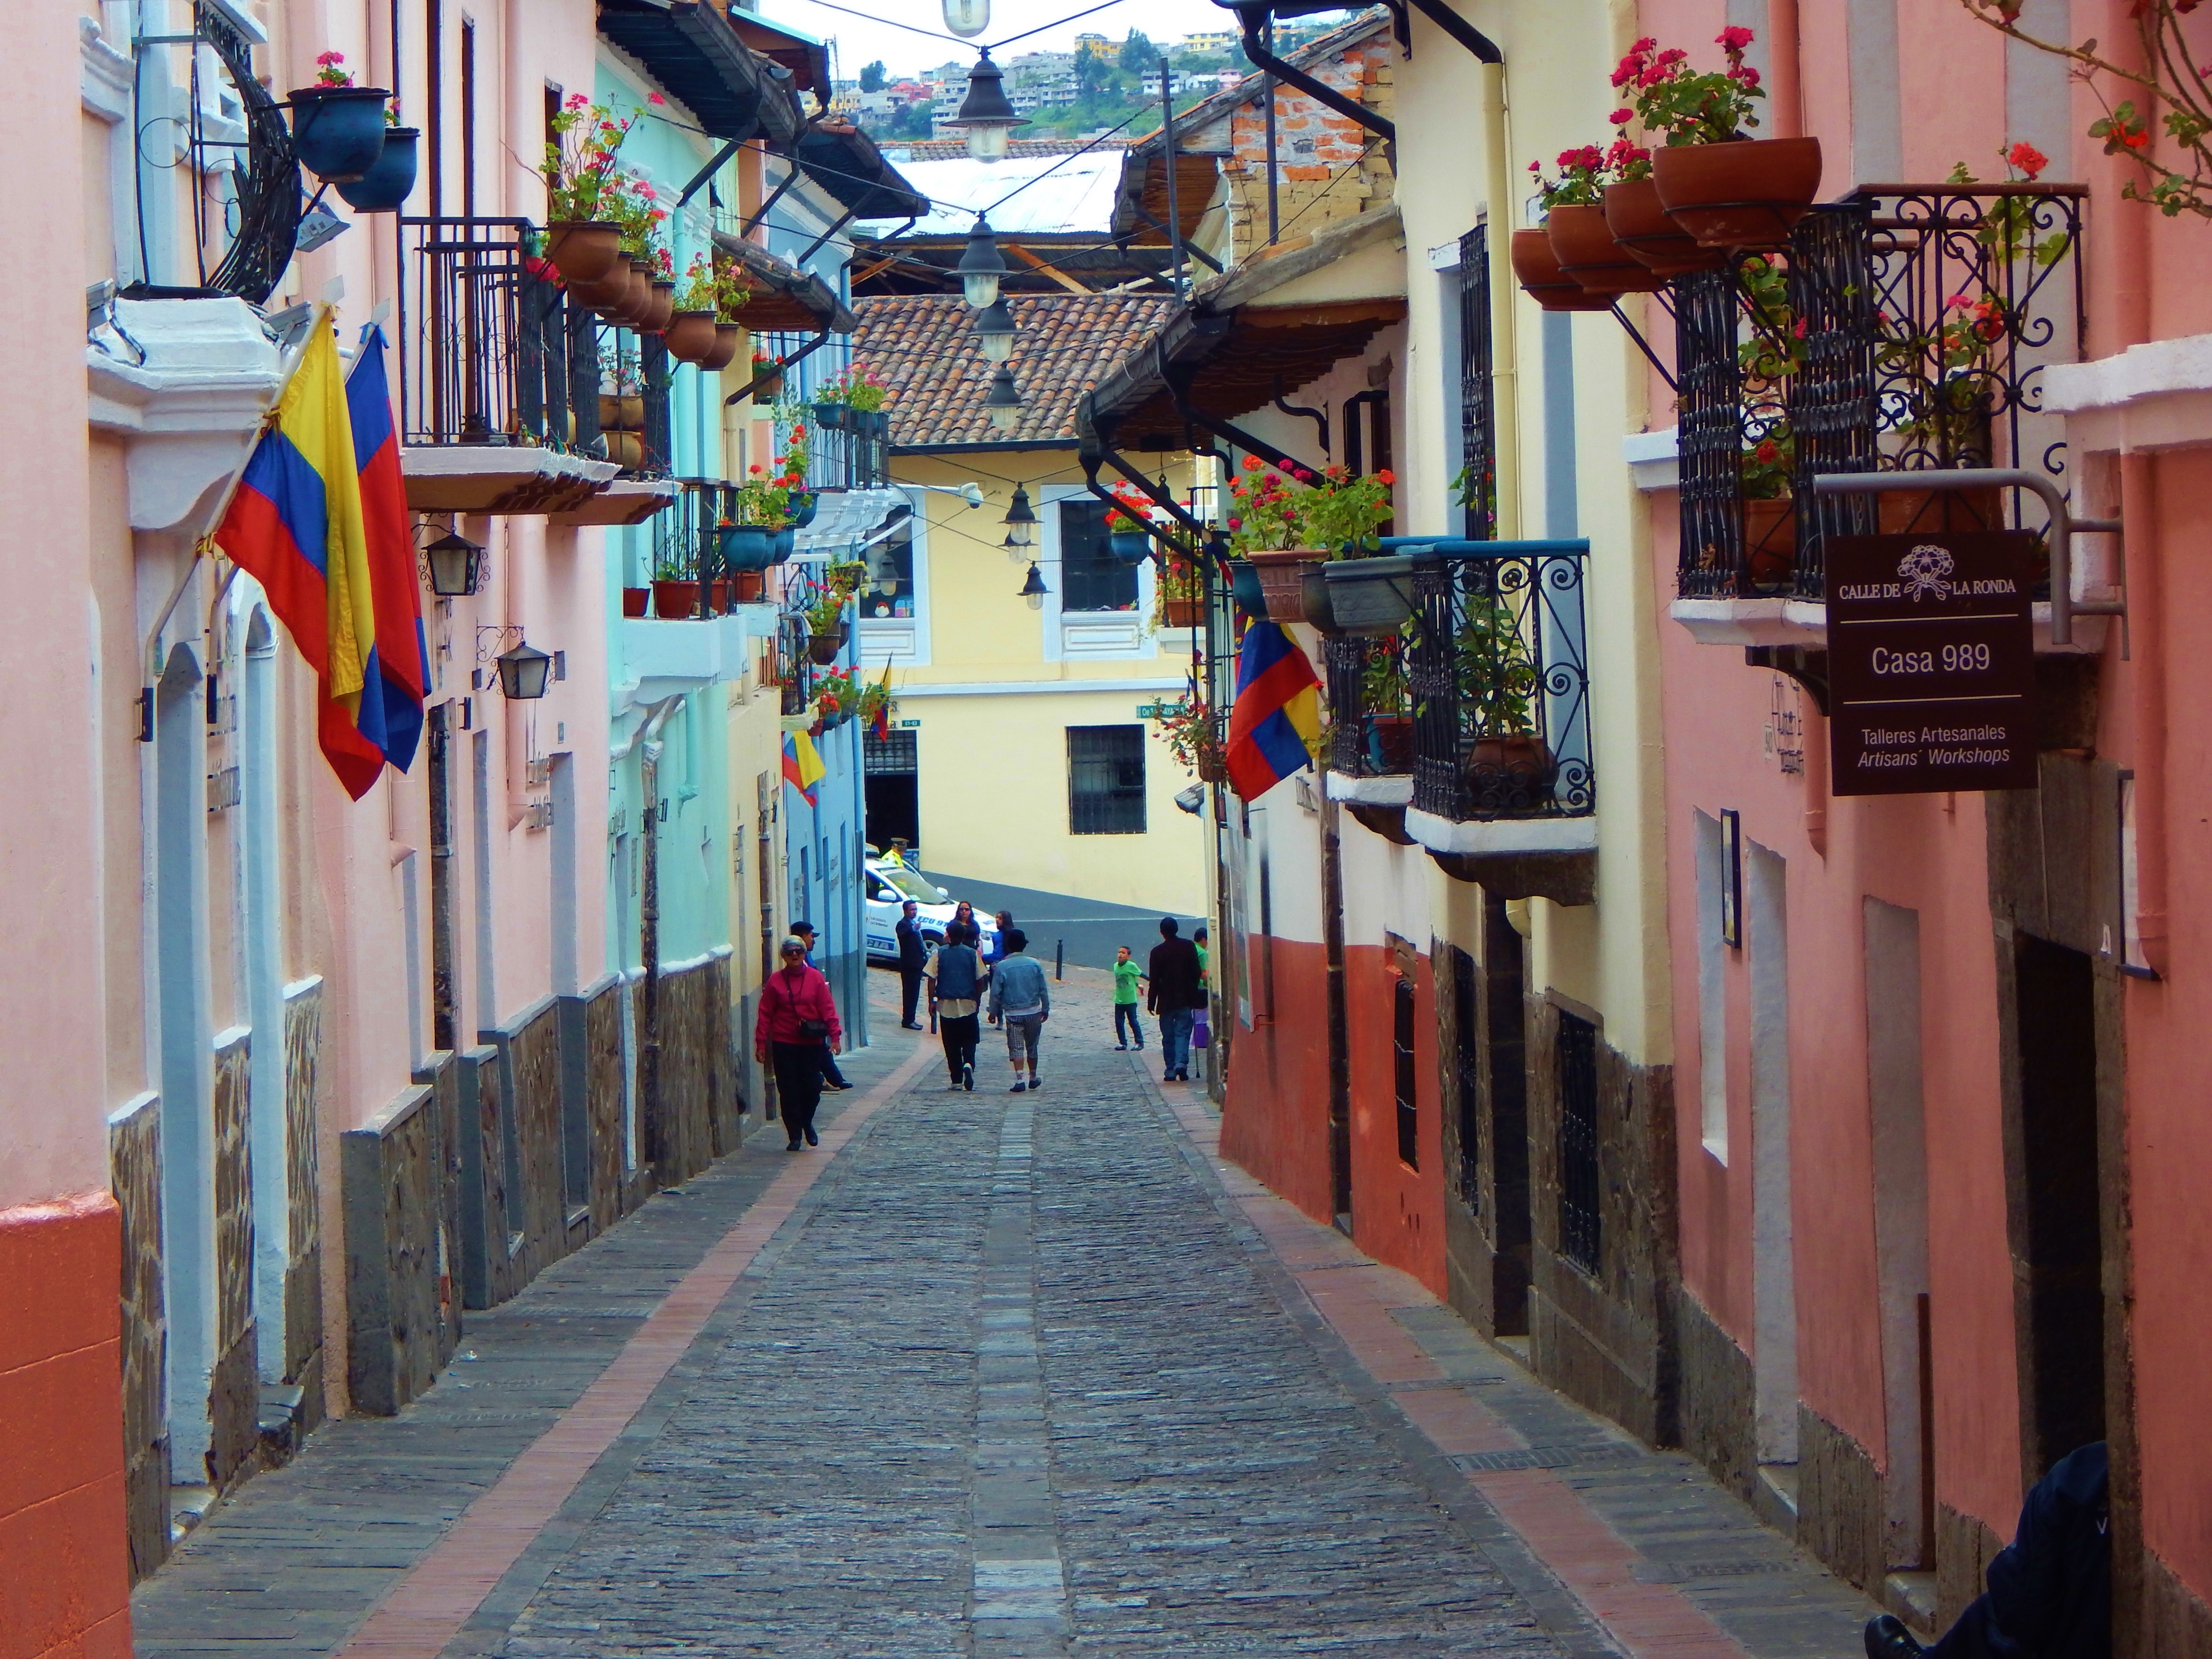 Strasse 'La Ronda' in Quito